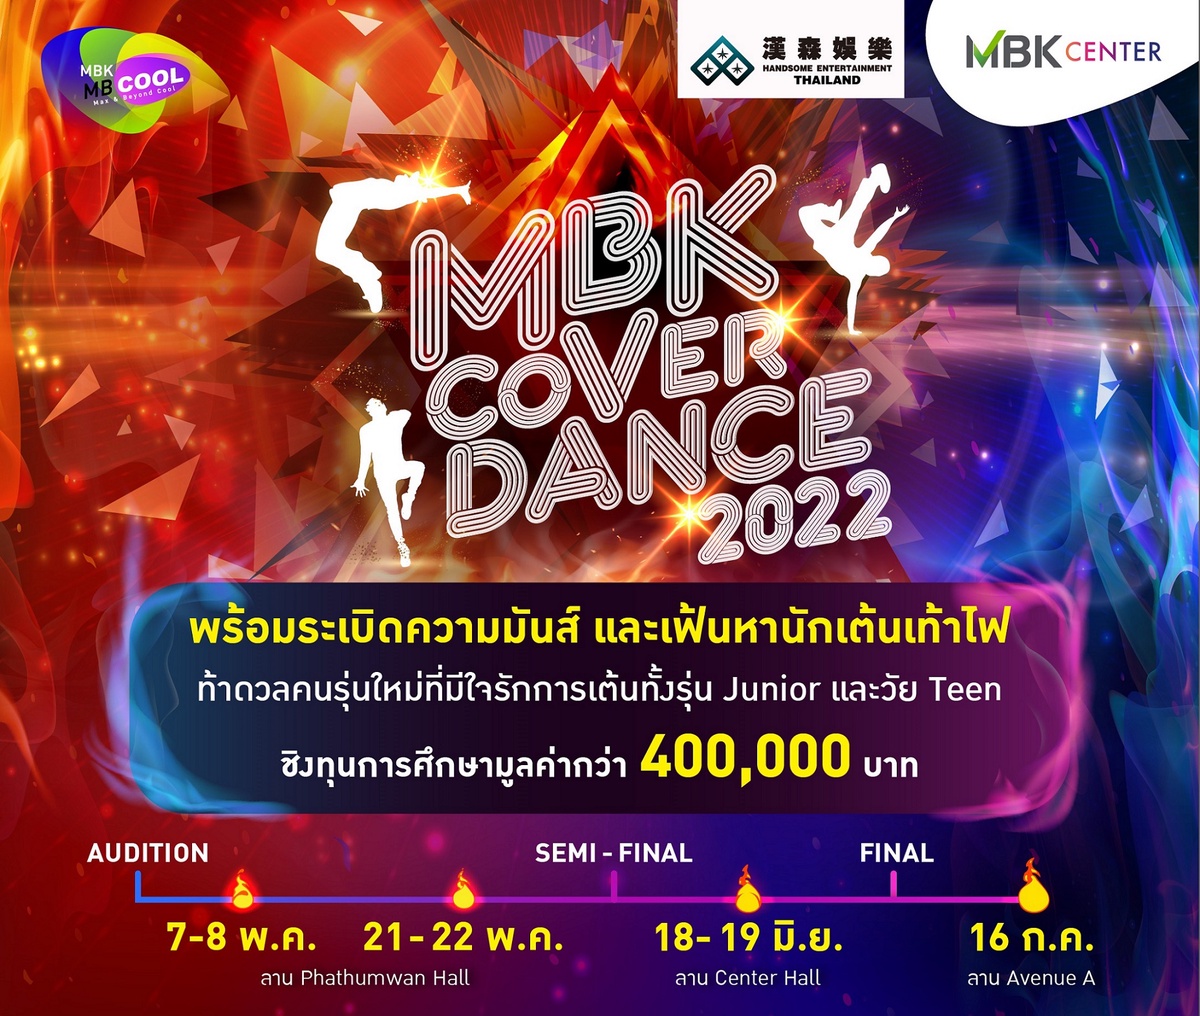 มันส์เข้มข้นมาก! เอ็ม บี เค เซ็นเตอร์ ชวนชมการแข่งขันรอบรองชนะเลิศ MBK COVER DANCE 2022